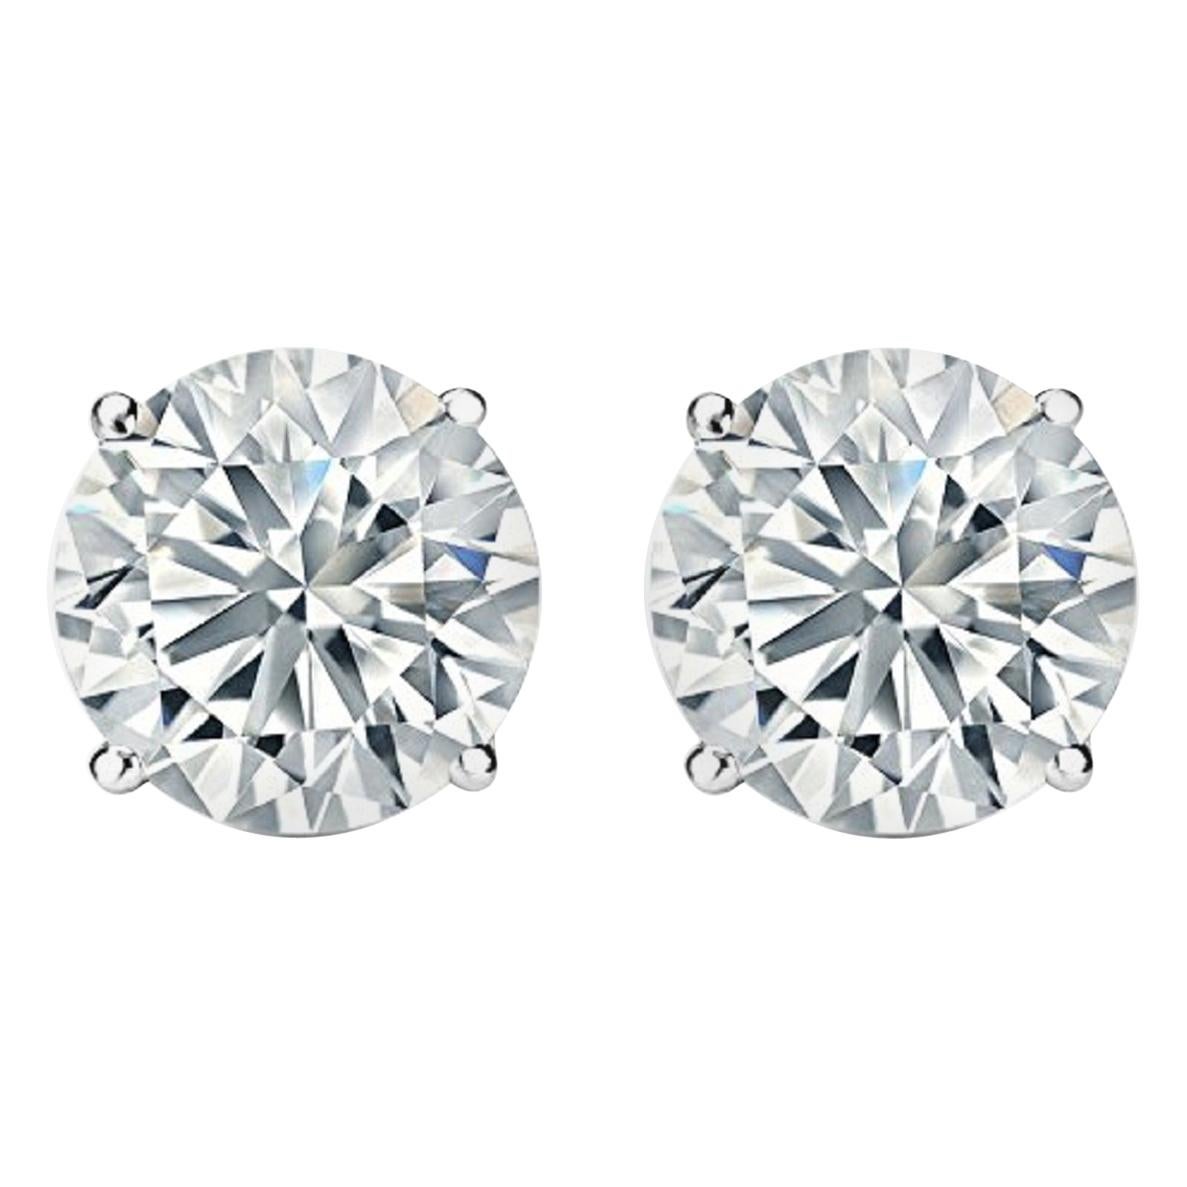 8.03 Carat Diamond Stud Earrings G-H I1